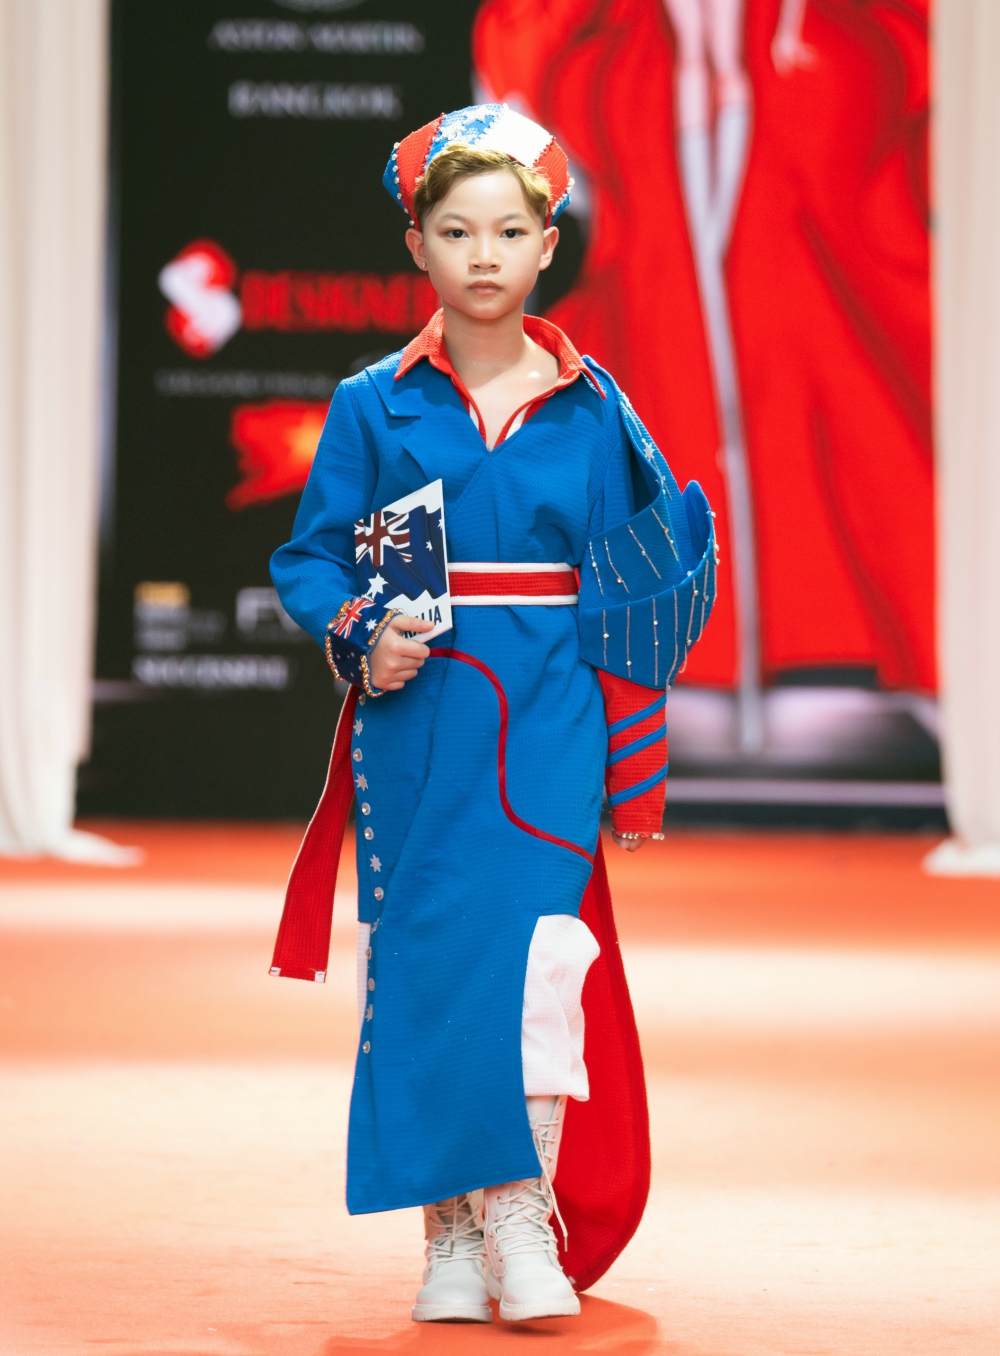 Siêu mẫu nhí Phong Thiên sải bước tự tin trên sàn diễn thời trang quốc tế - ảnh 1